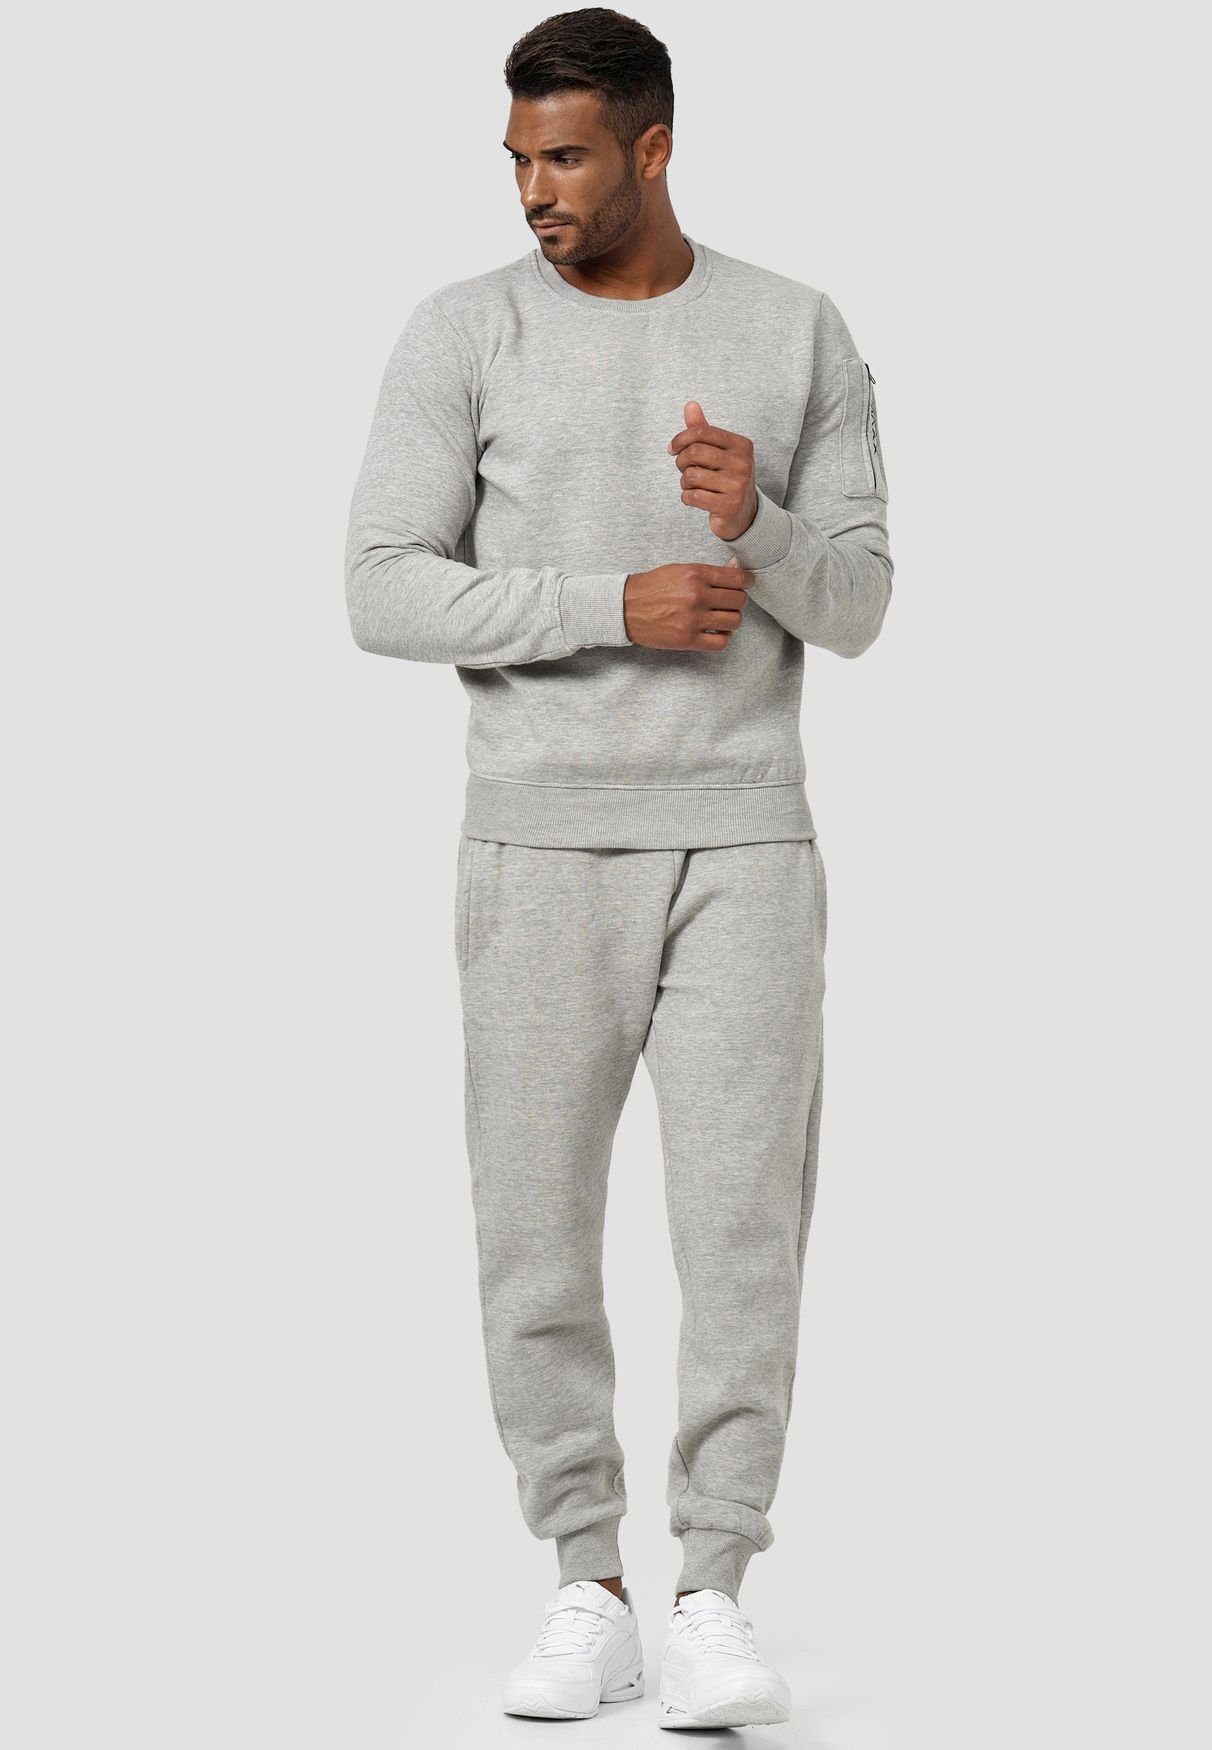 Sweatshirt ohne Pullover Kapuze Grau mit Sweatshirt 4240 Armtasche in Egomaxx